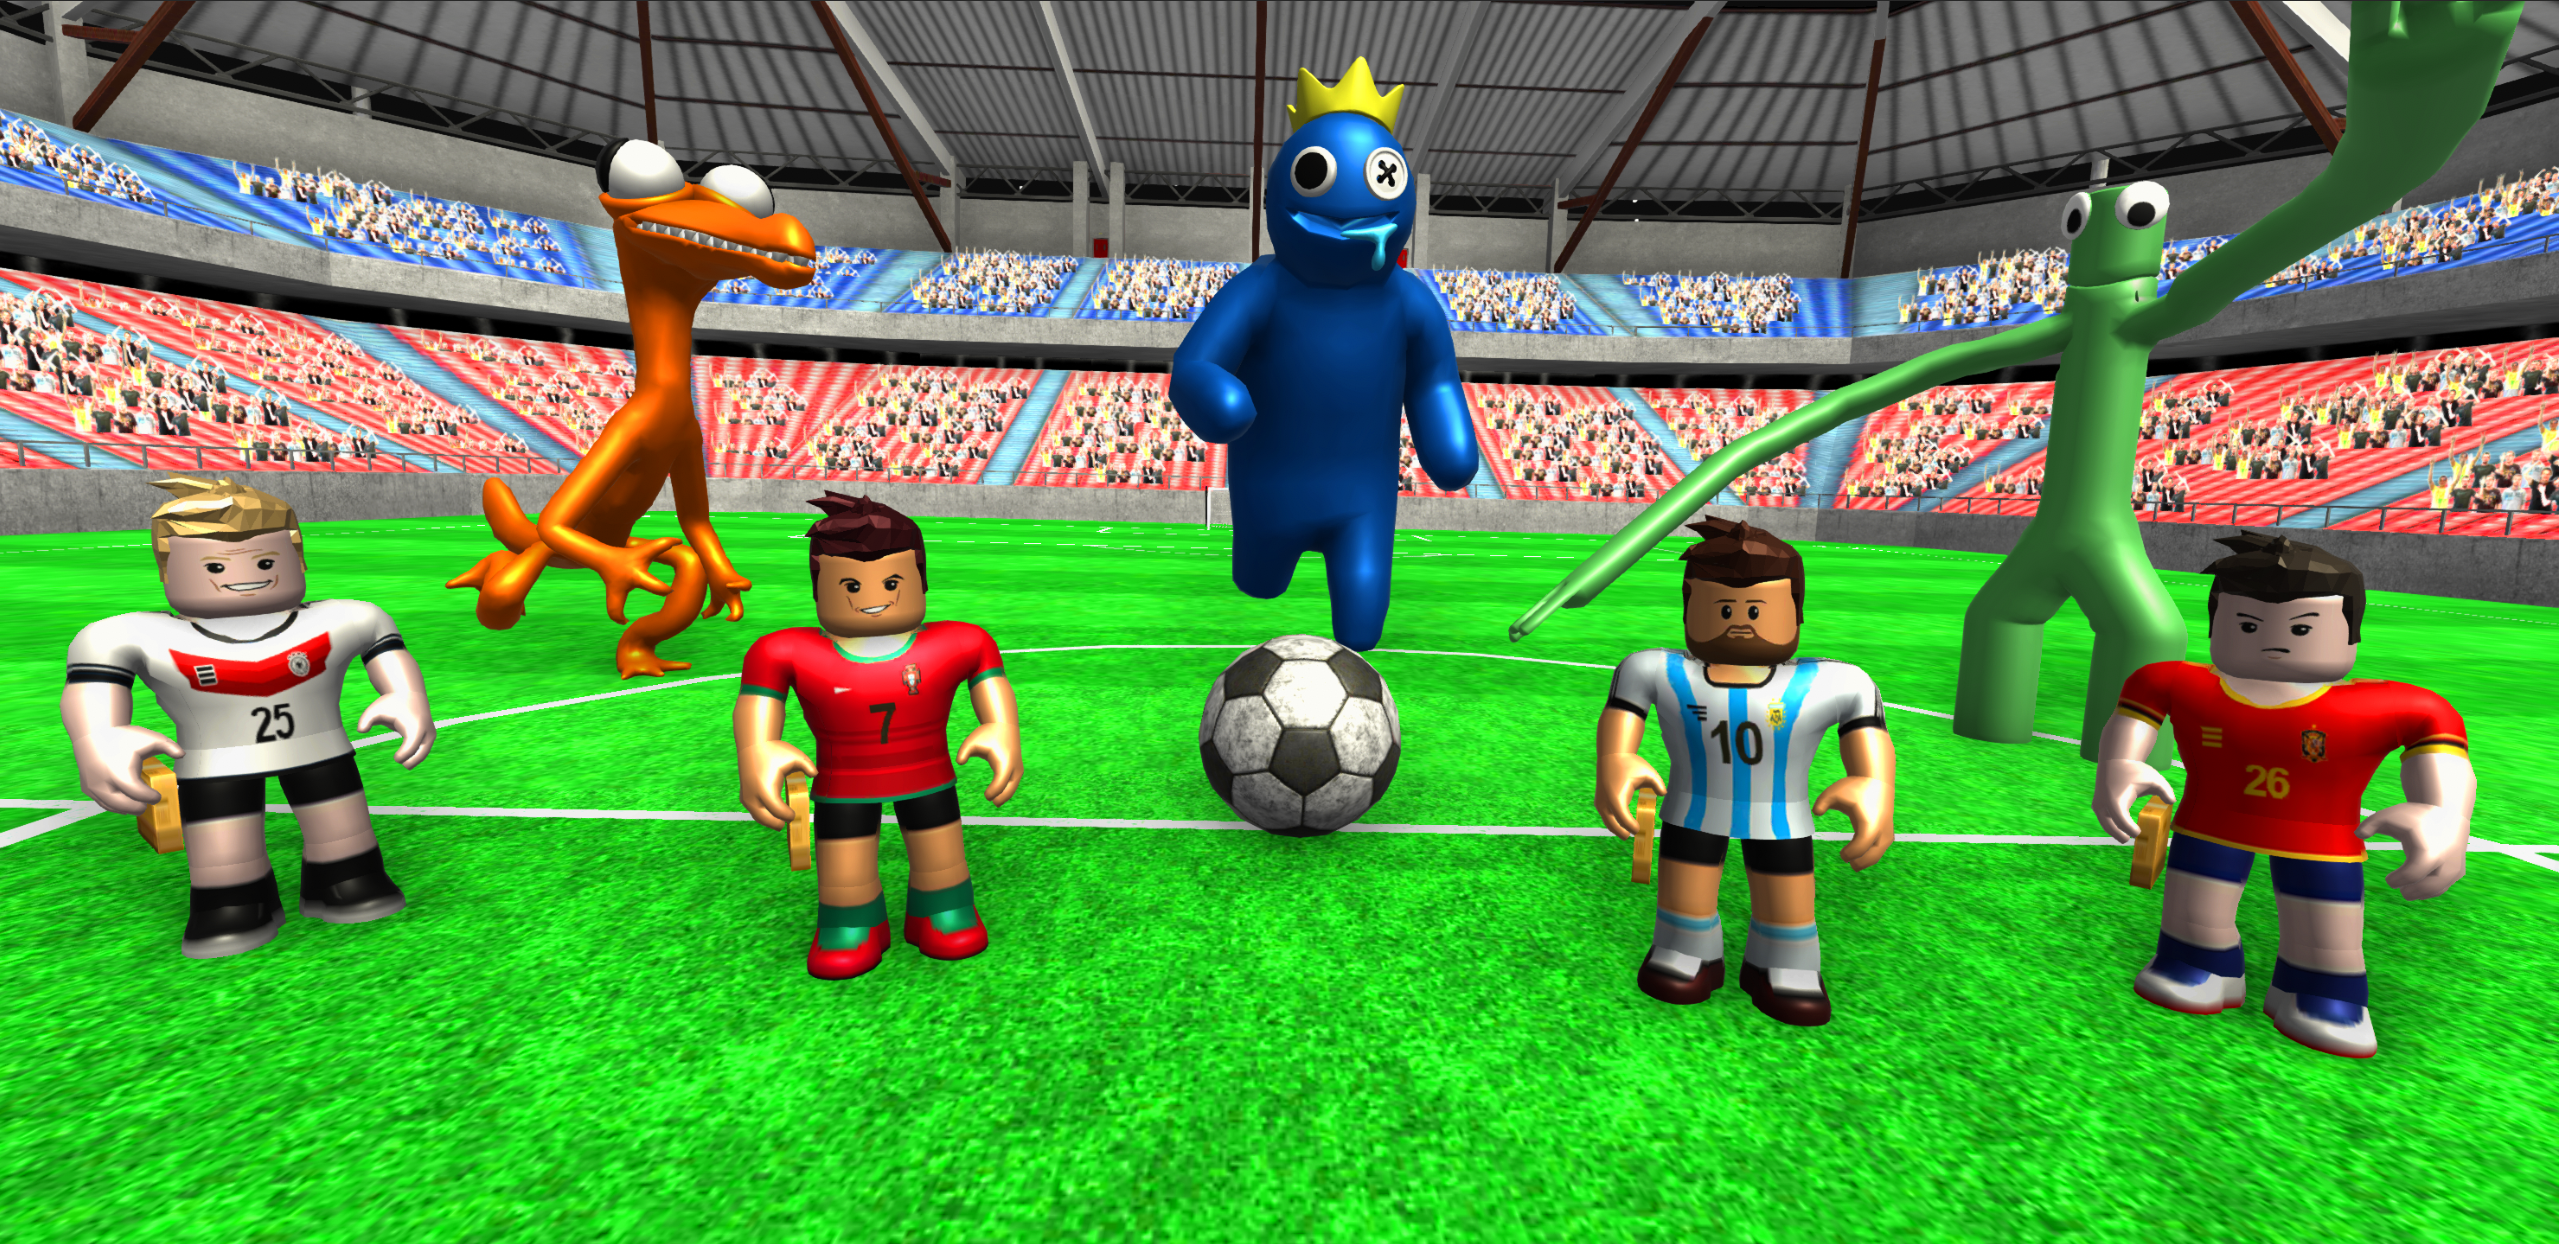 Baixe Rainbow Football Friends 3D no PC com MEmu